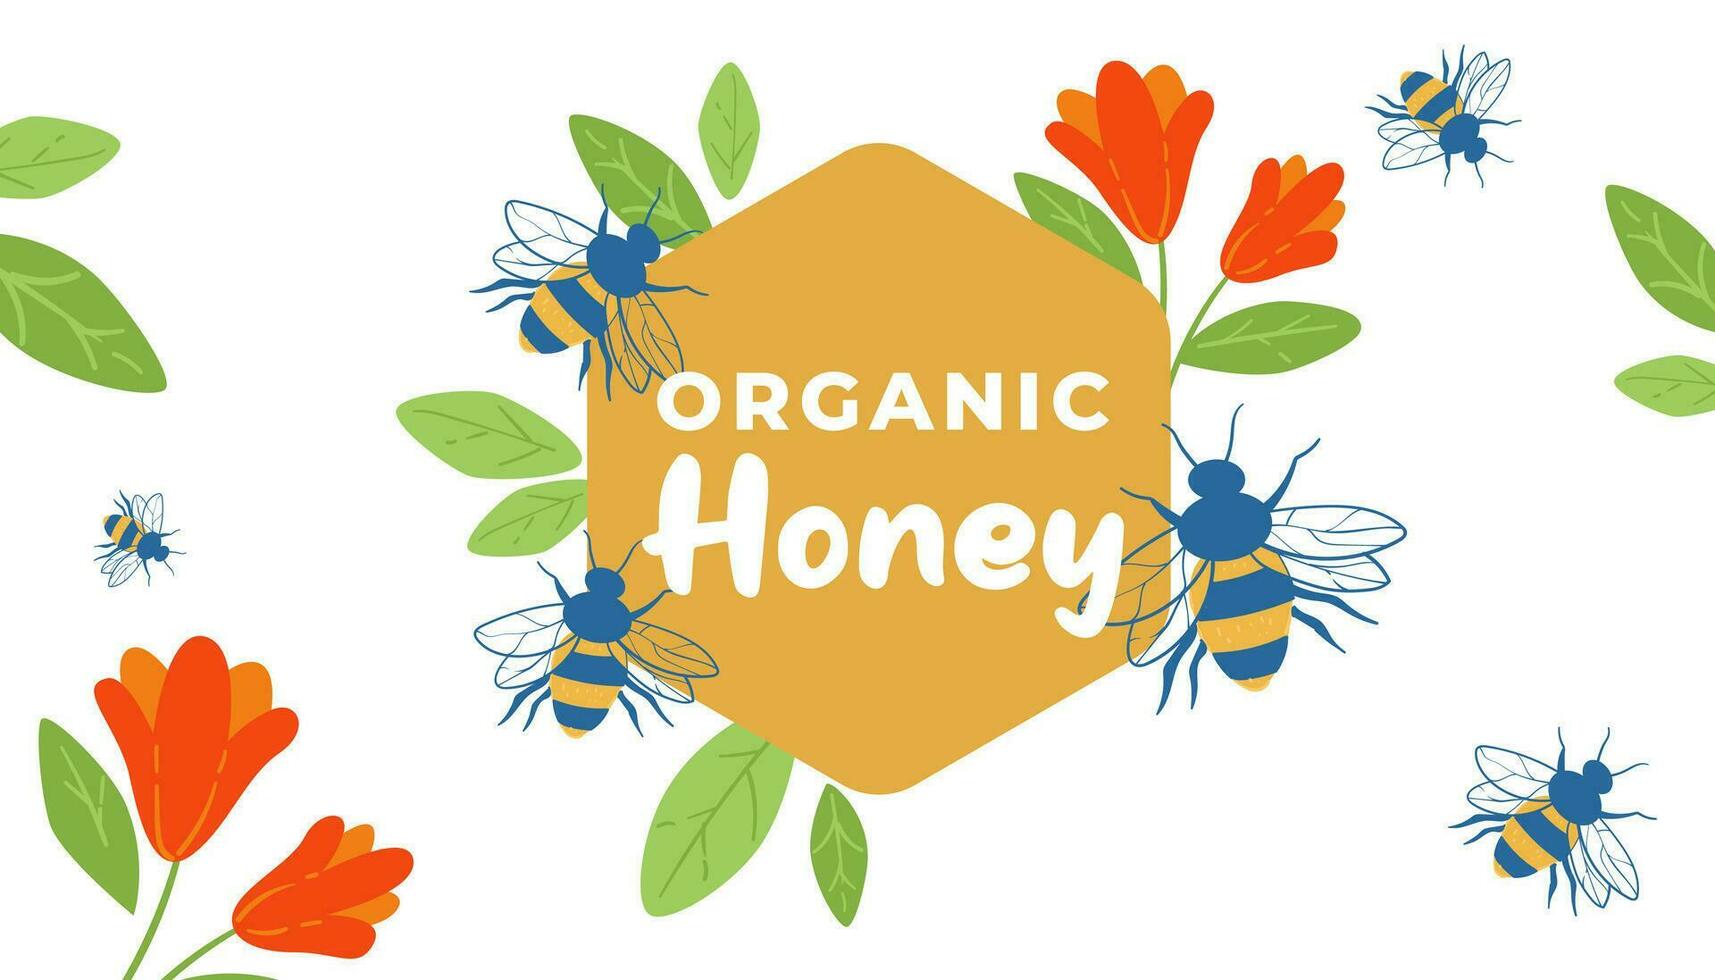 organisk honung bin Produkter, PR baner vektor